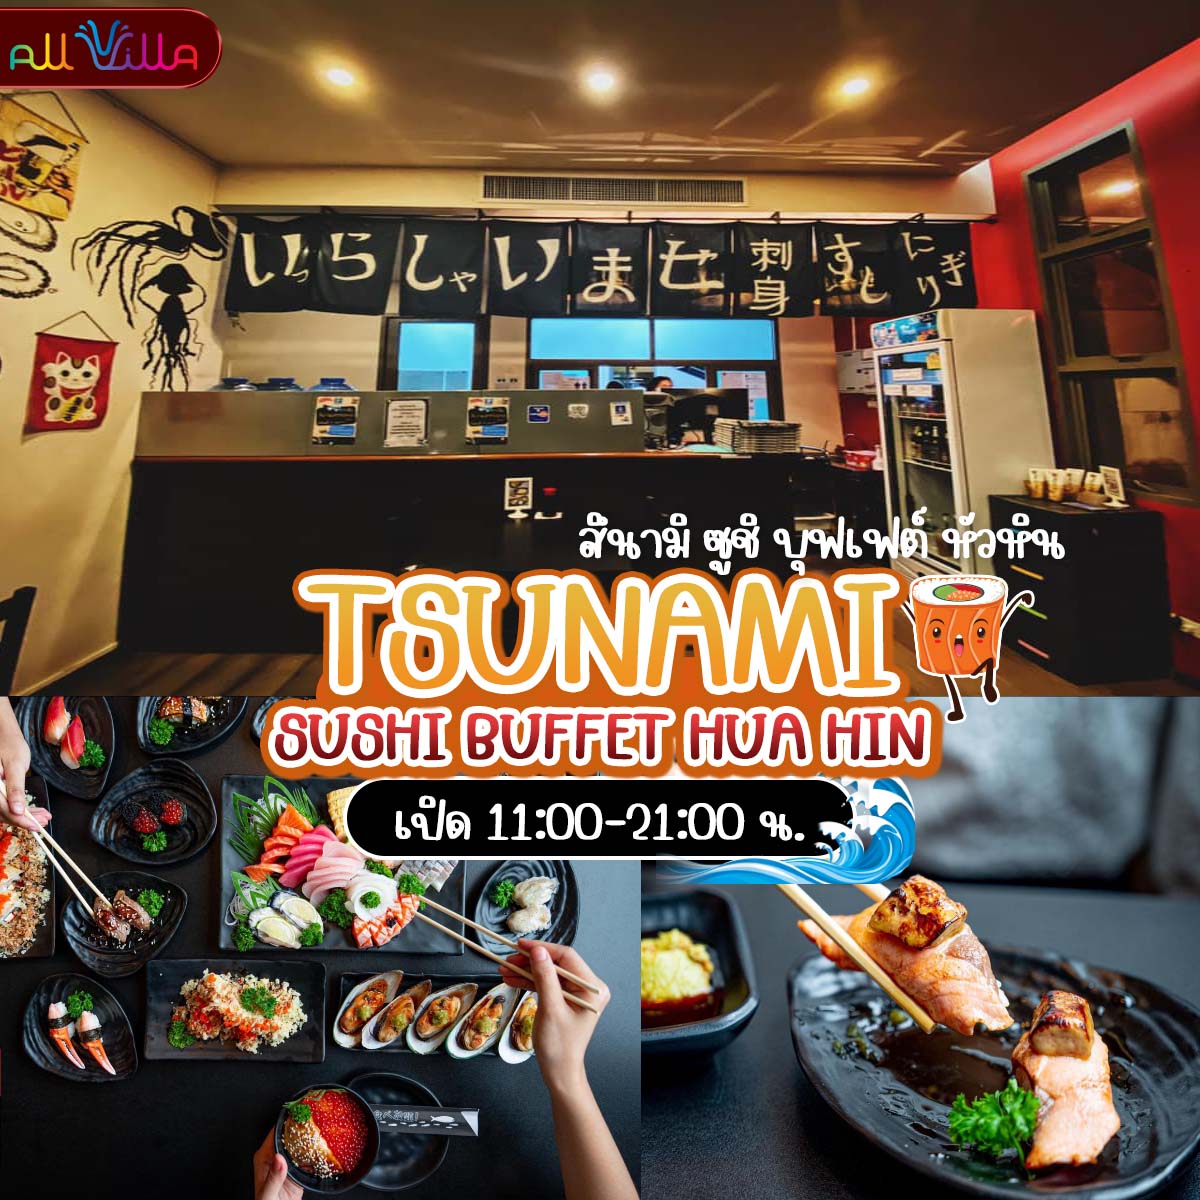 Tsunami Sushi Buffet Hua Hin